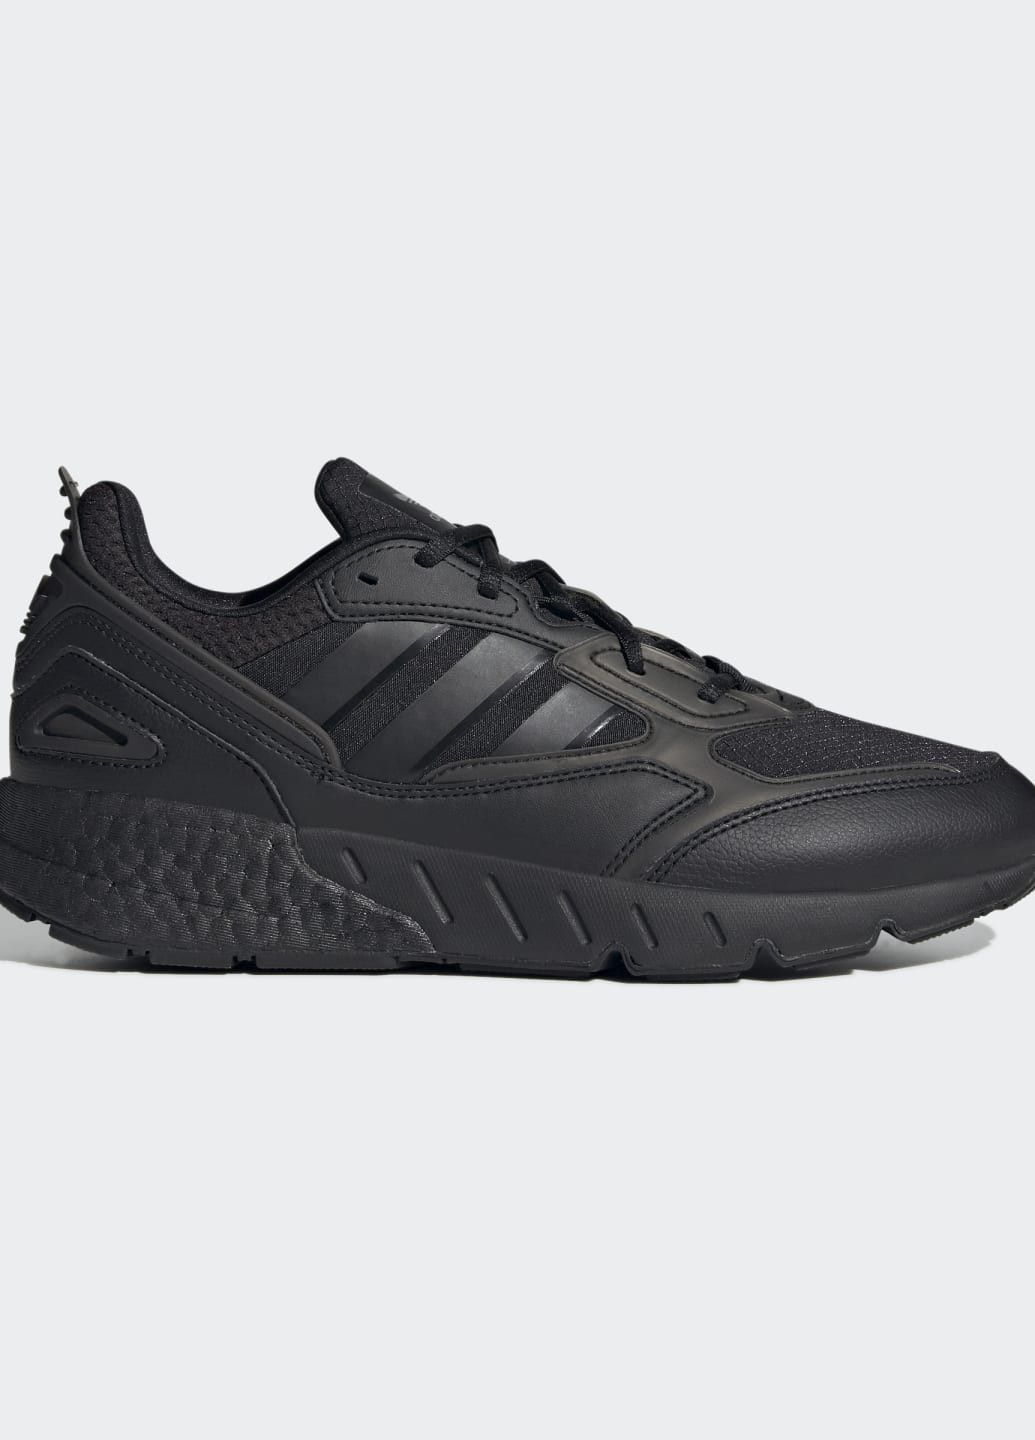 Черные всесезонные кроссовки zx 1k boost 2.0 adidas